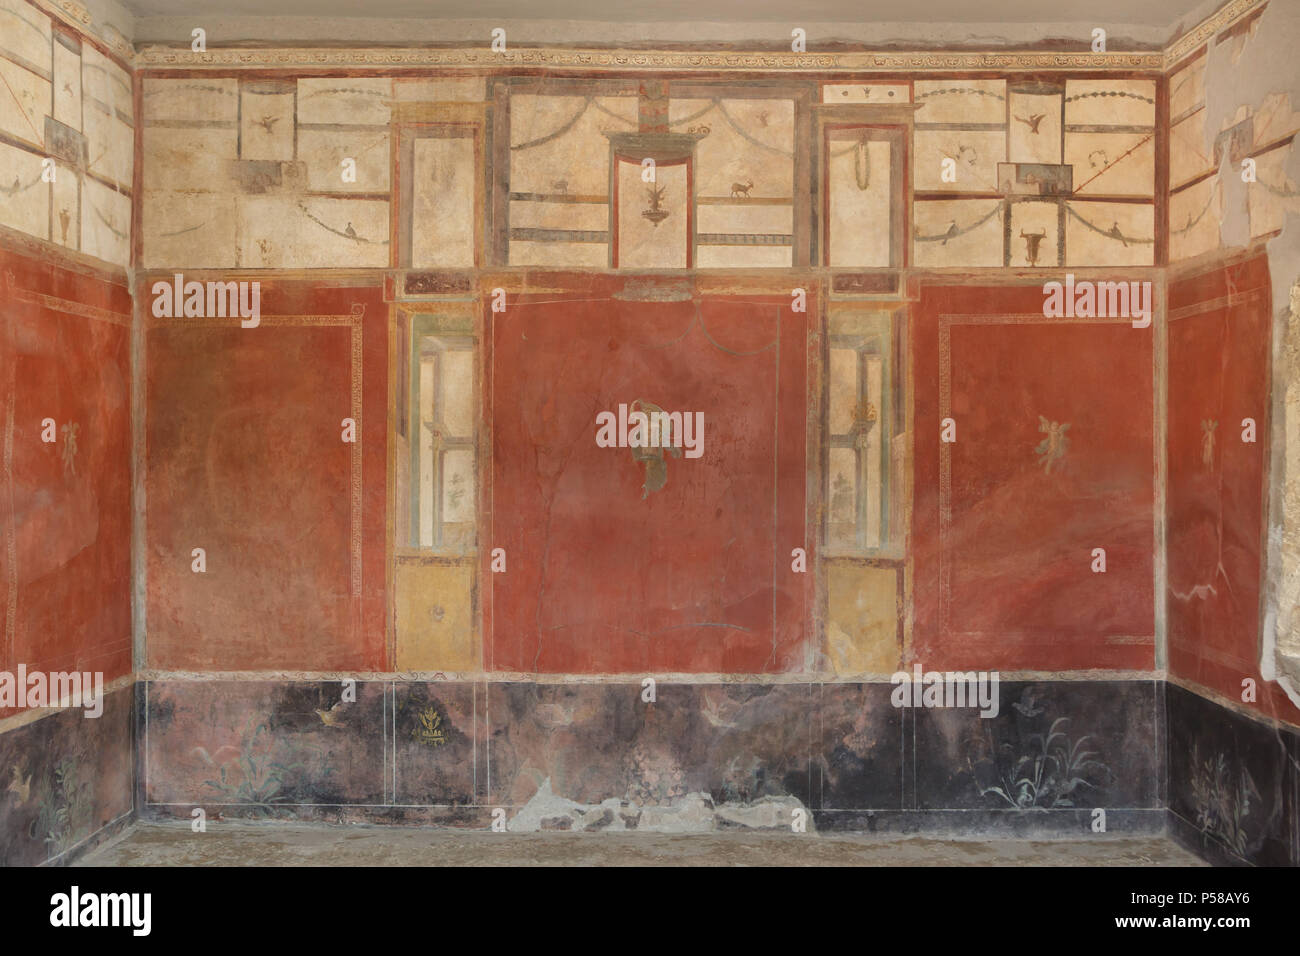 Wandmalerei im vierten Stil mit roten Platten getrennt durch architektonische Elemente in die Wäsche von Stephanus (Fullonica di Stephanus) in die archäologische Stätte von Pompeji (Pompei) in der Nähe von Neapel, Kampanien, Italien. Stockfoto